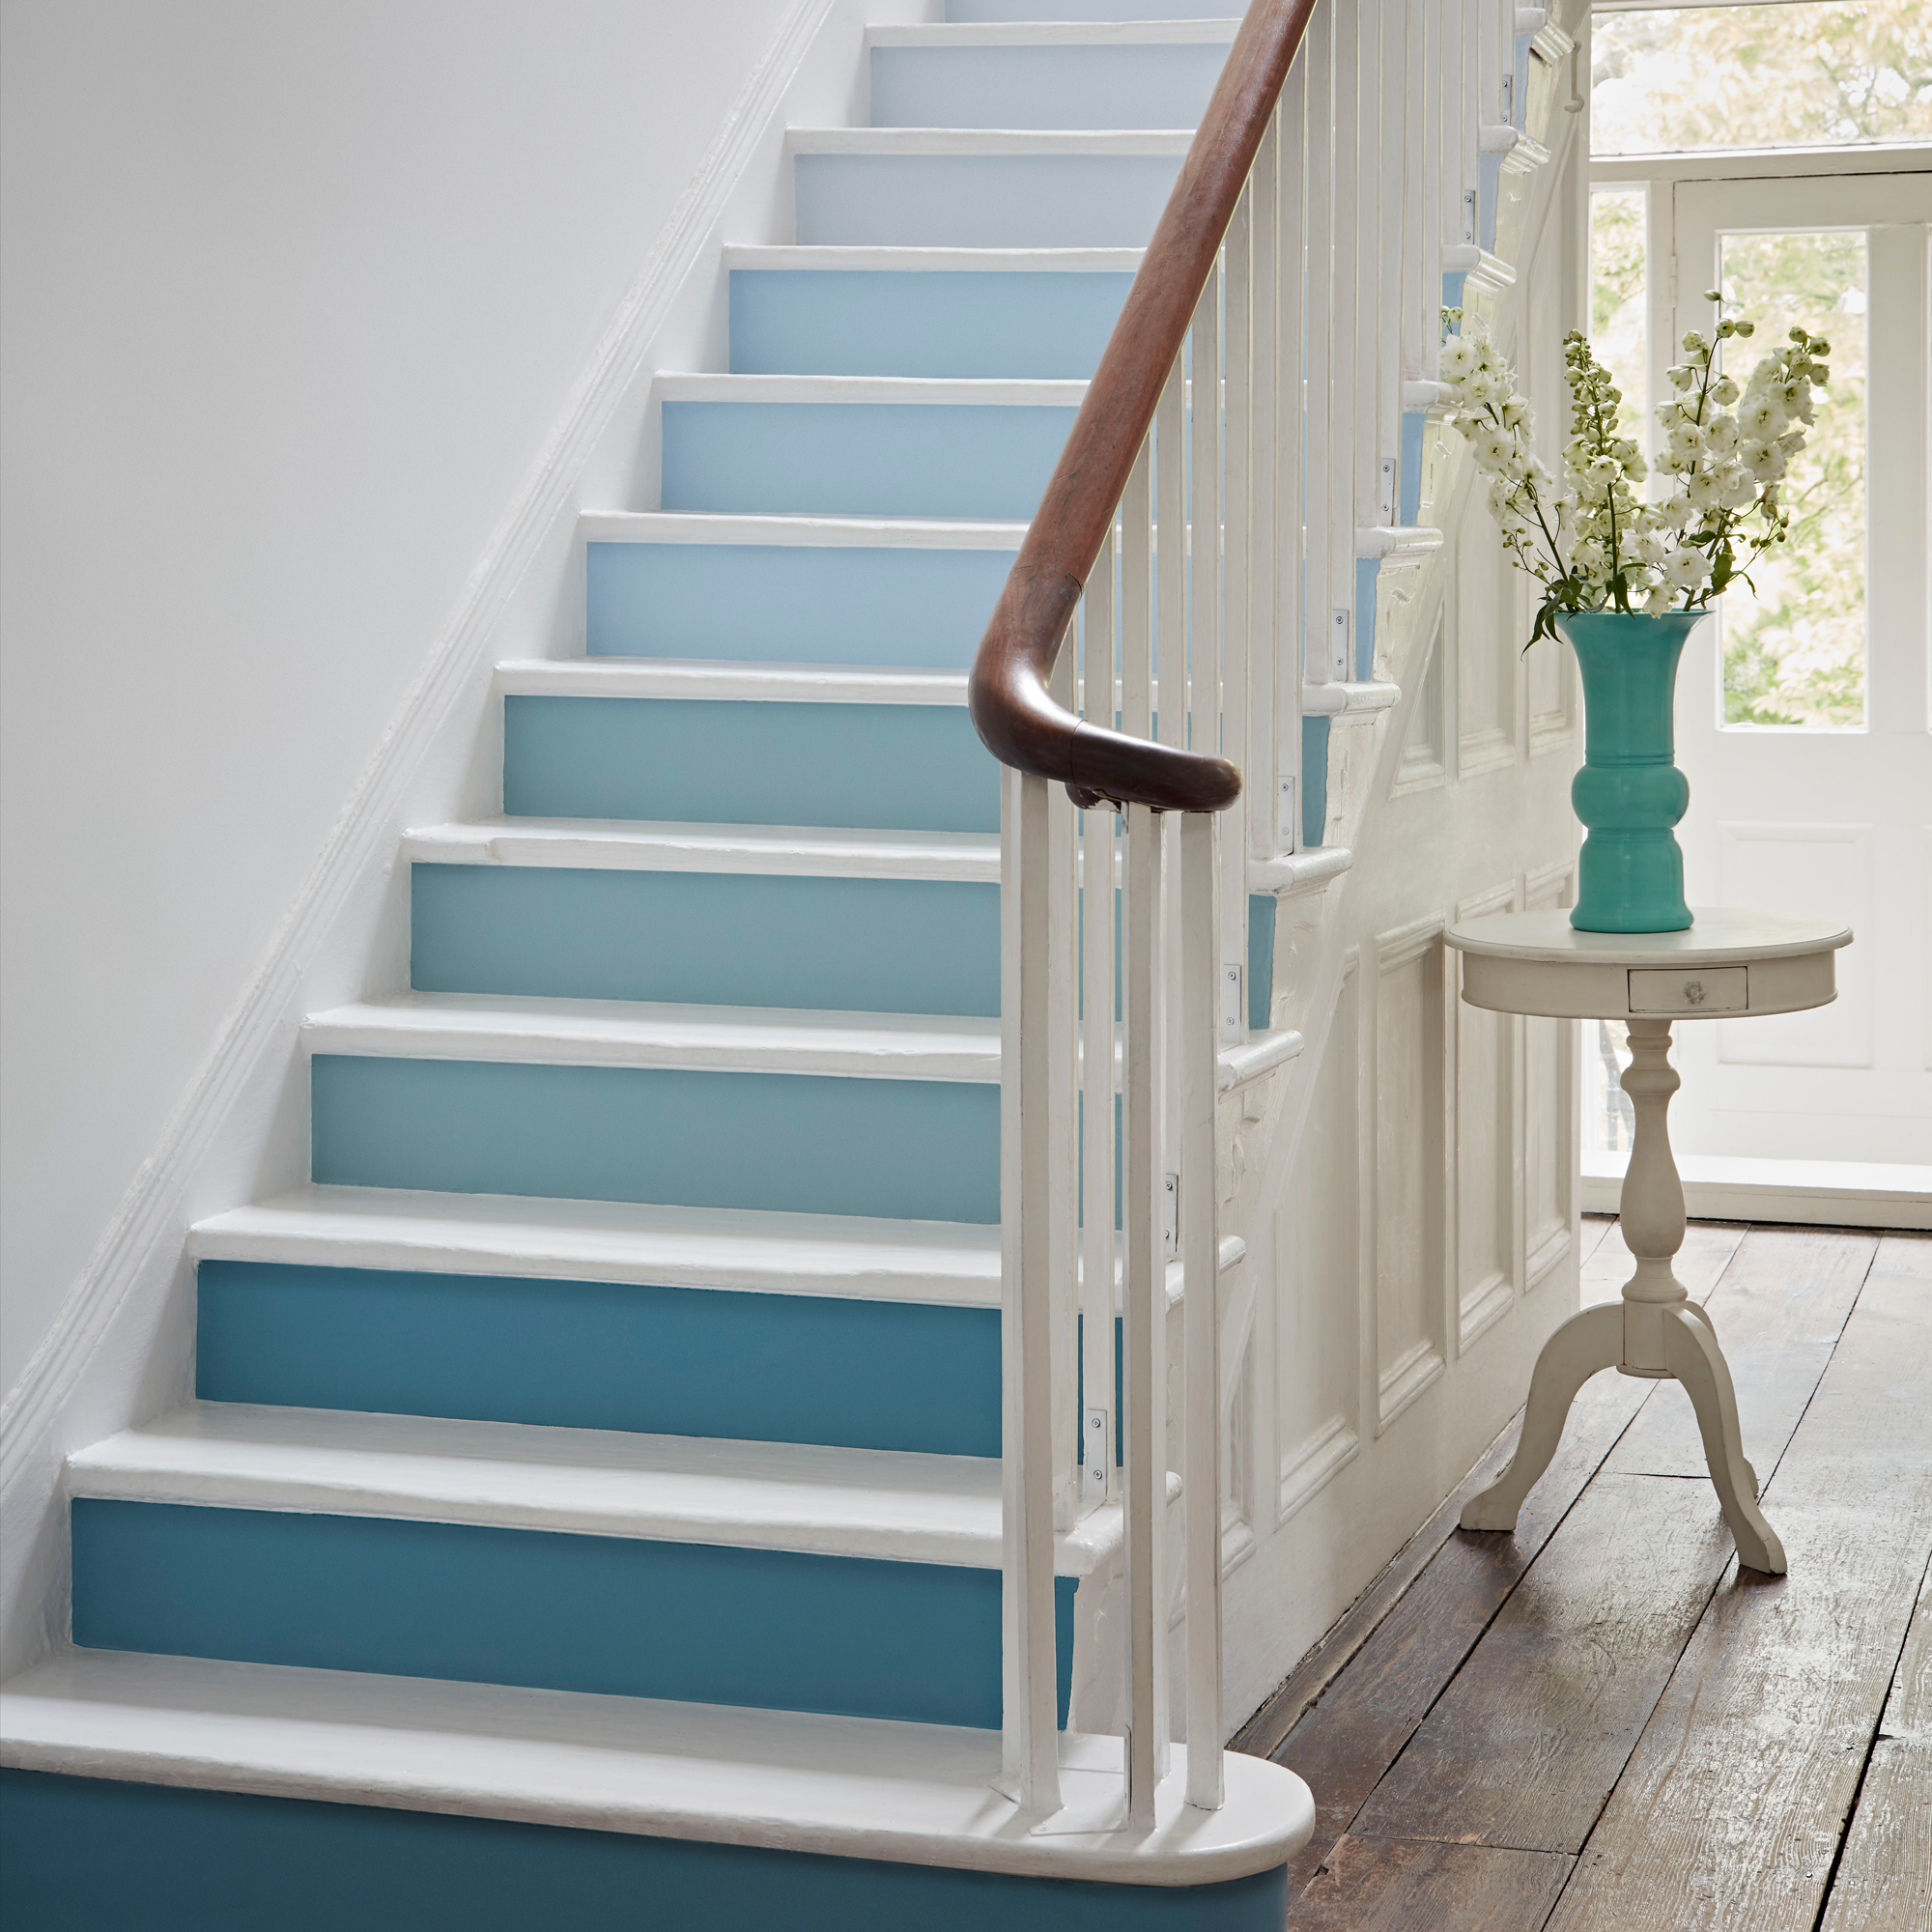 tangga dicat putih dan biru dengan gradien